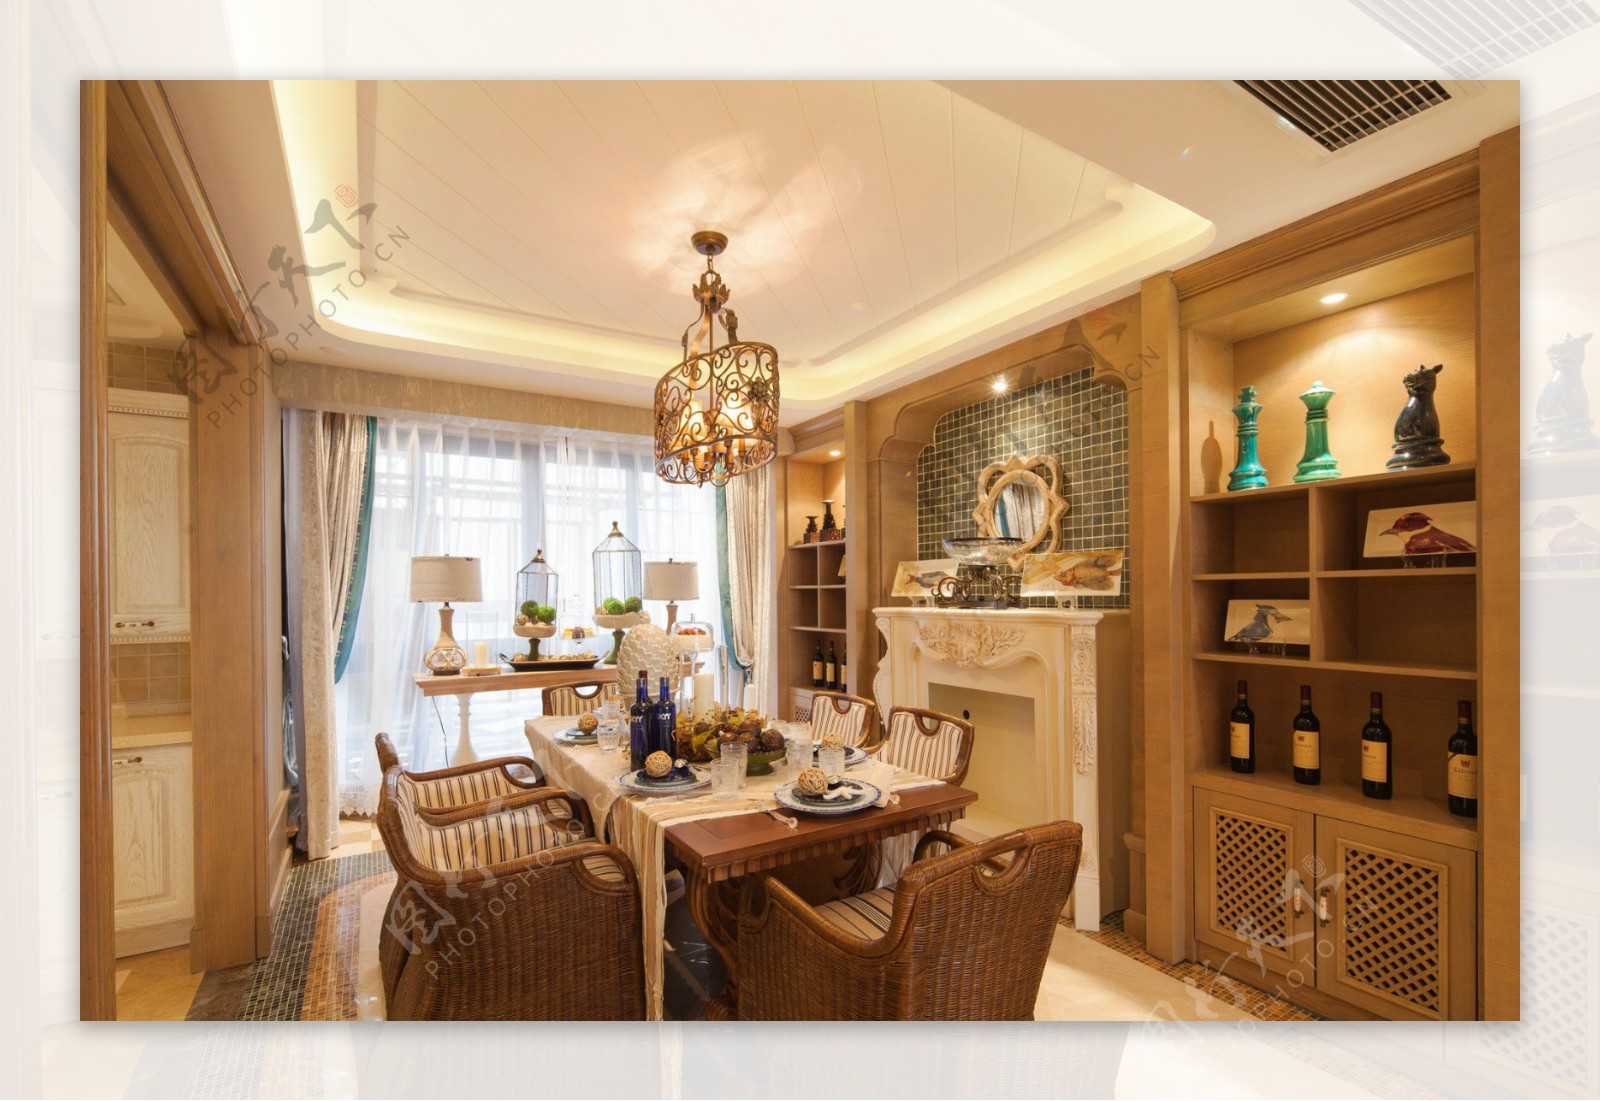 中式古朴客厅镂空木制柜子门室内装修效果图